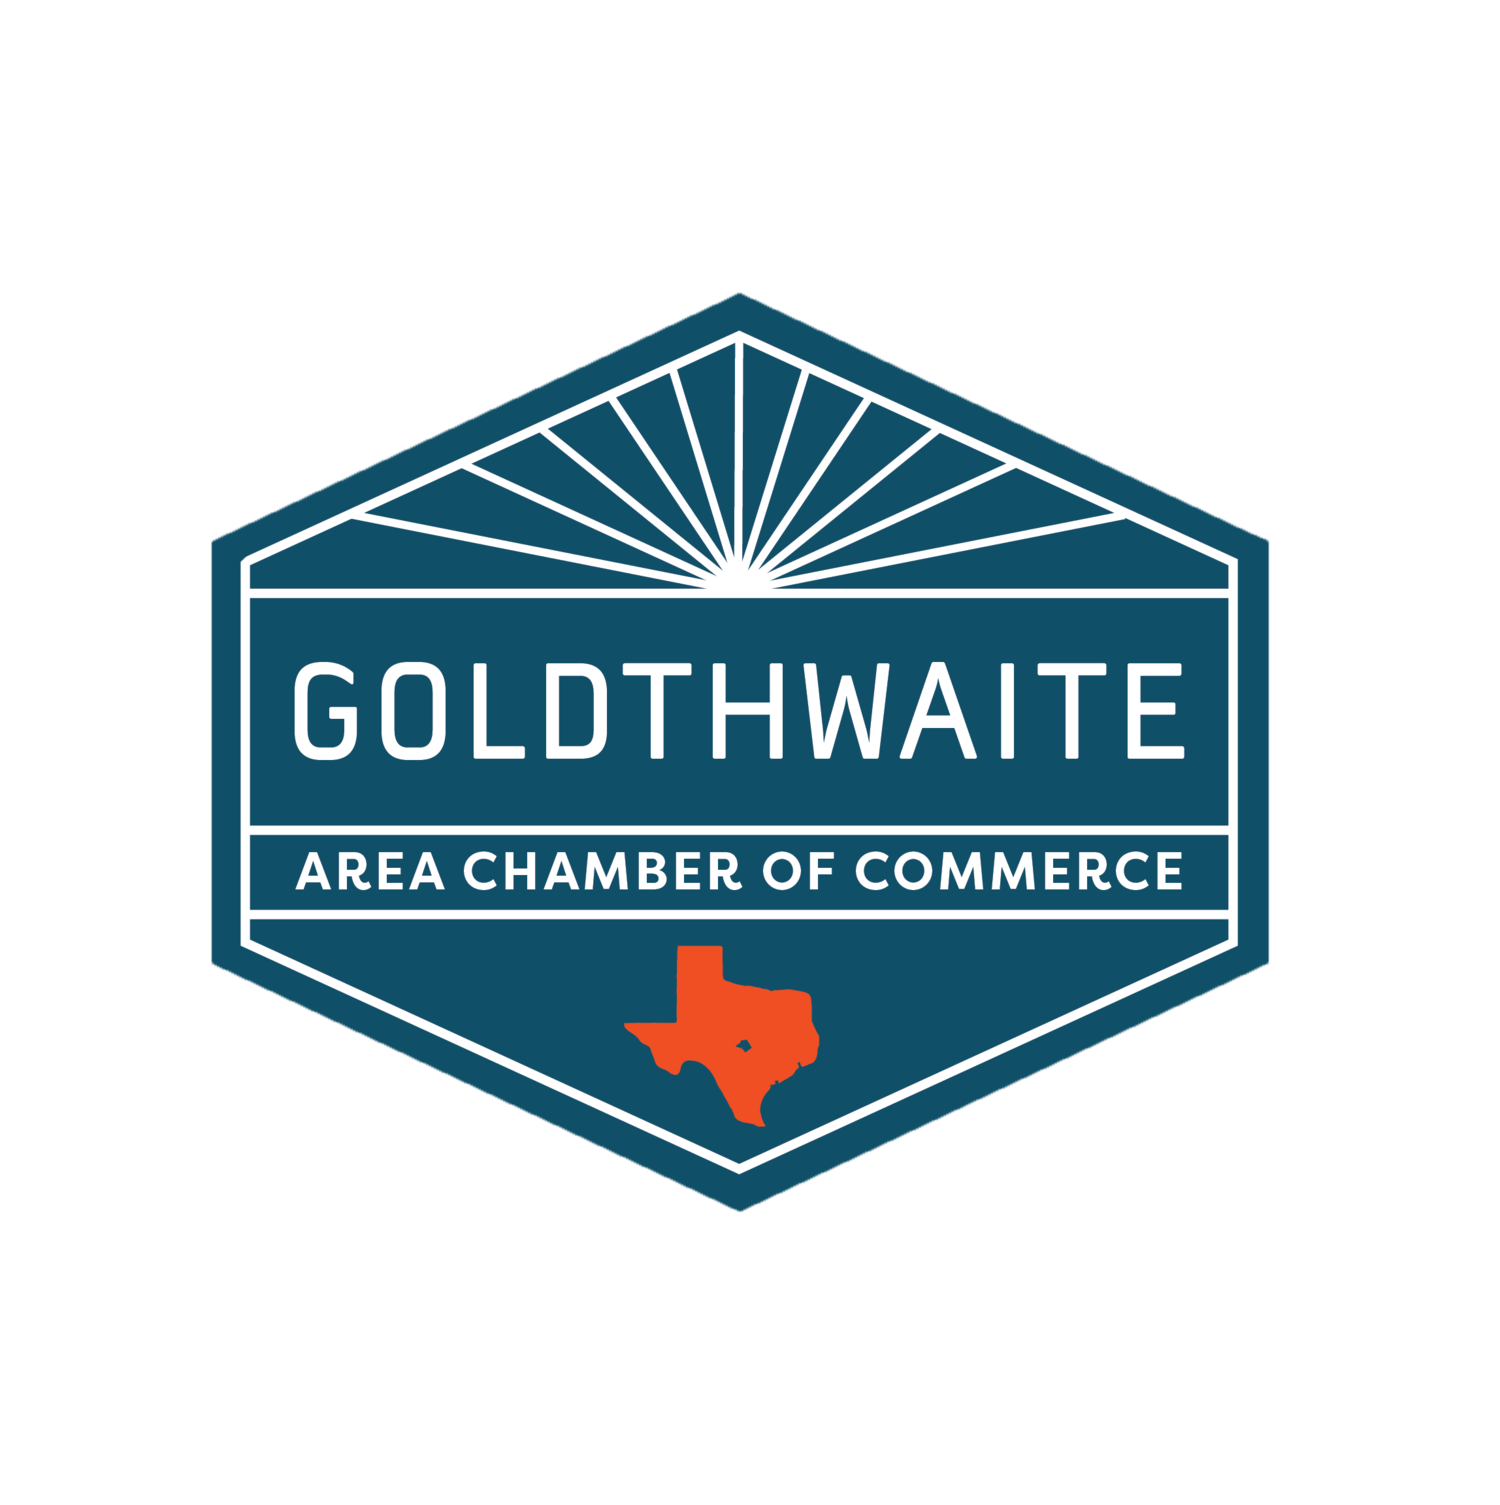 Goldthwaite area Chamber of Commerce